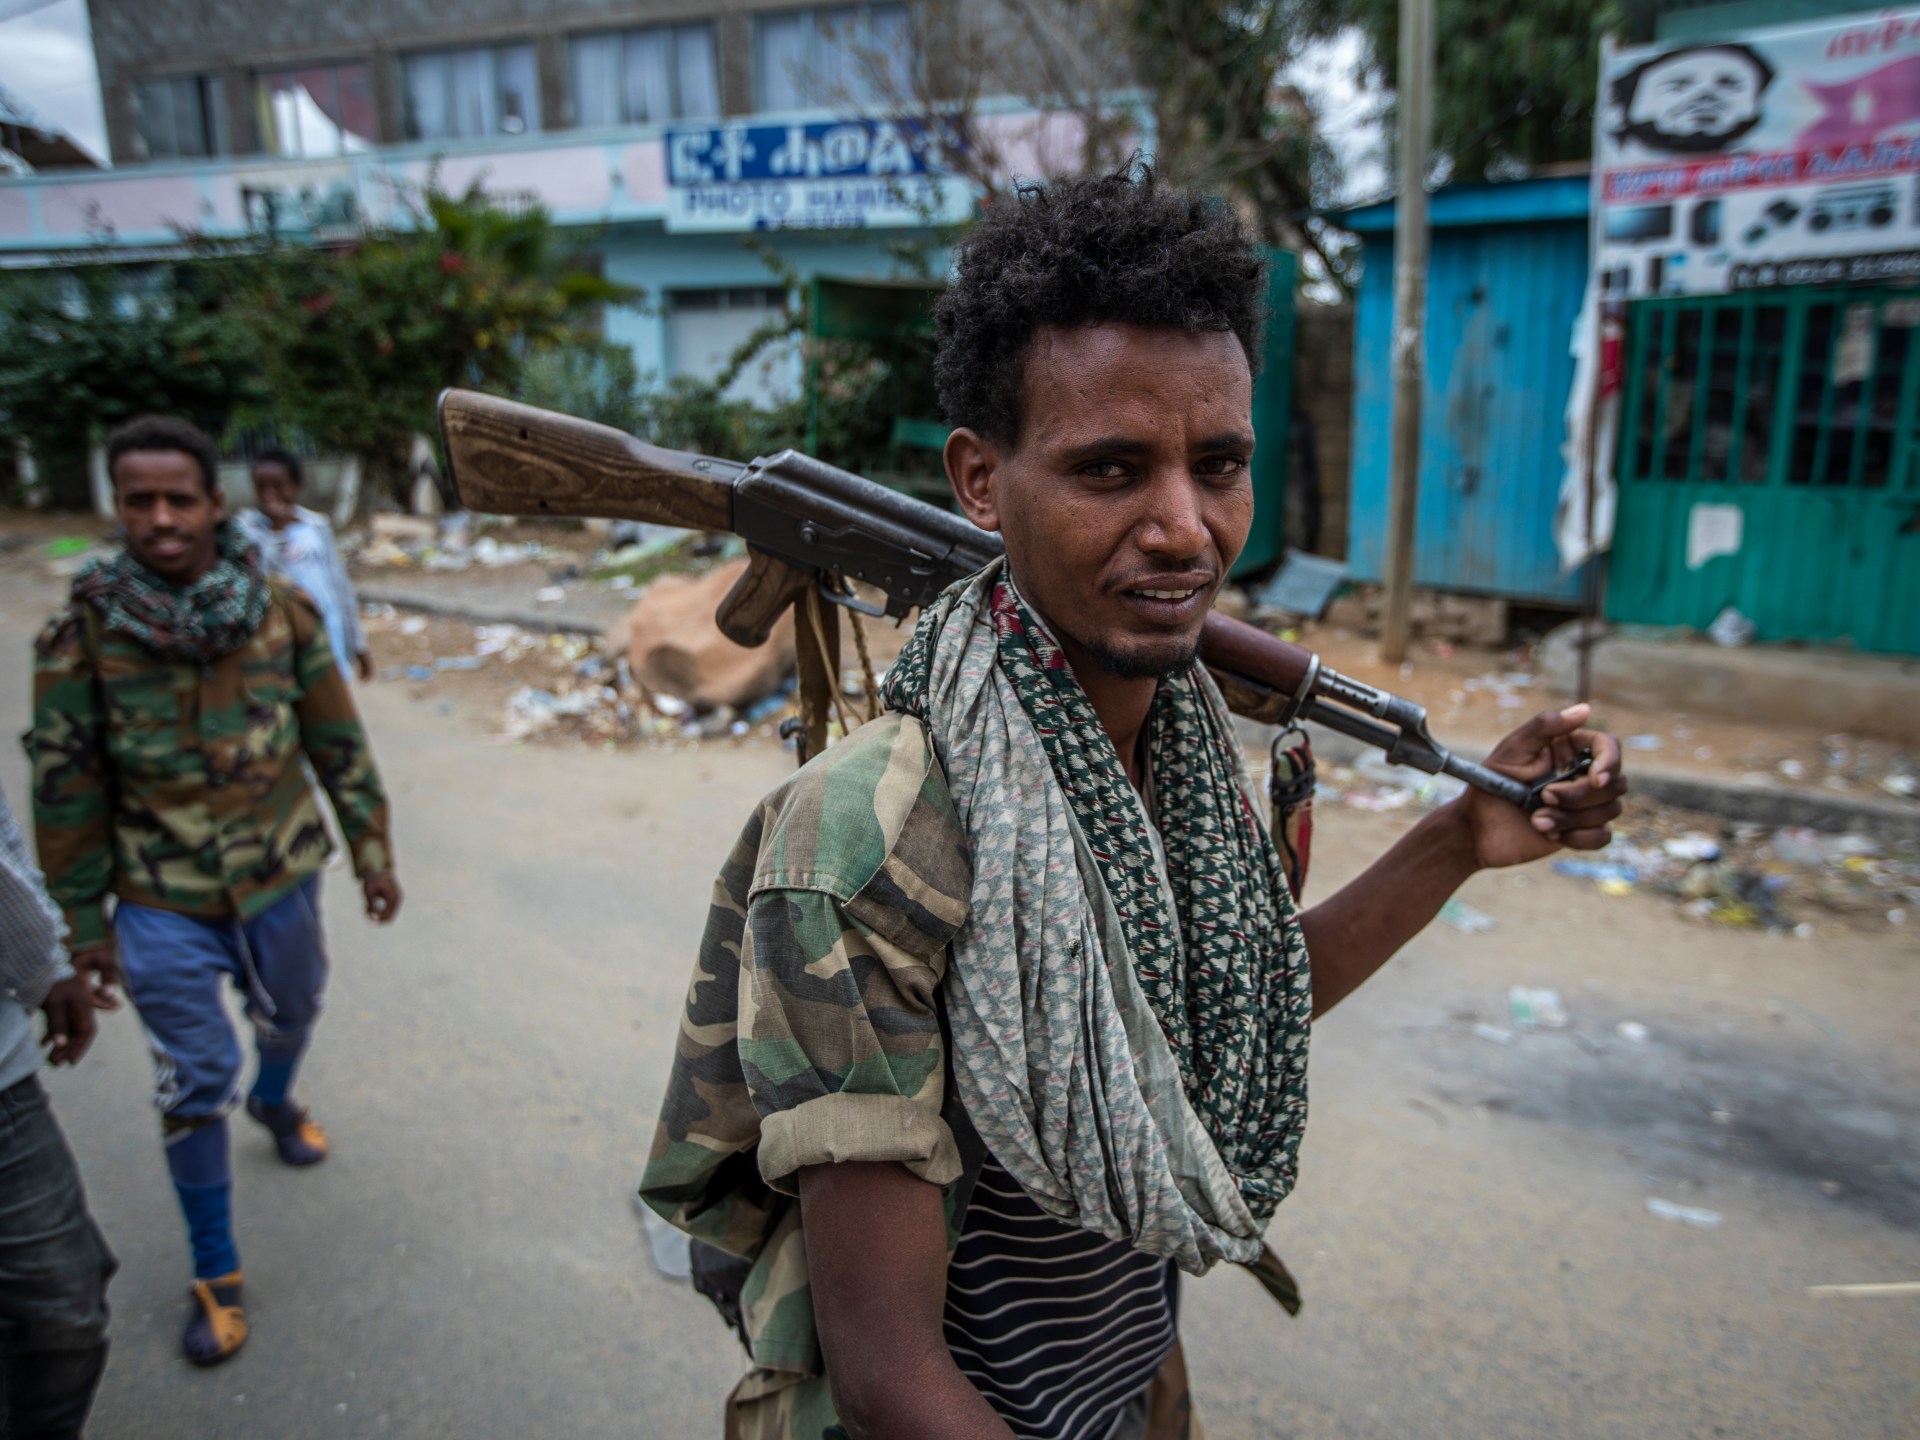 Nasib pejuang yang ditangkap masih belum diketahui berbulan-bulan setelah gencatan senjata Ethiopia |  Hak asasi Manusia